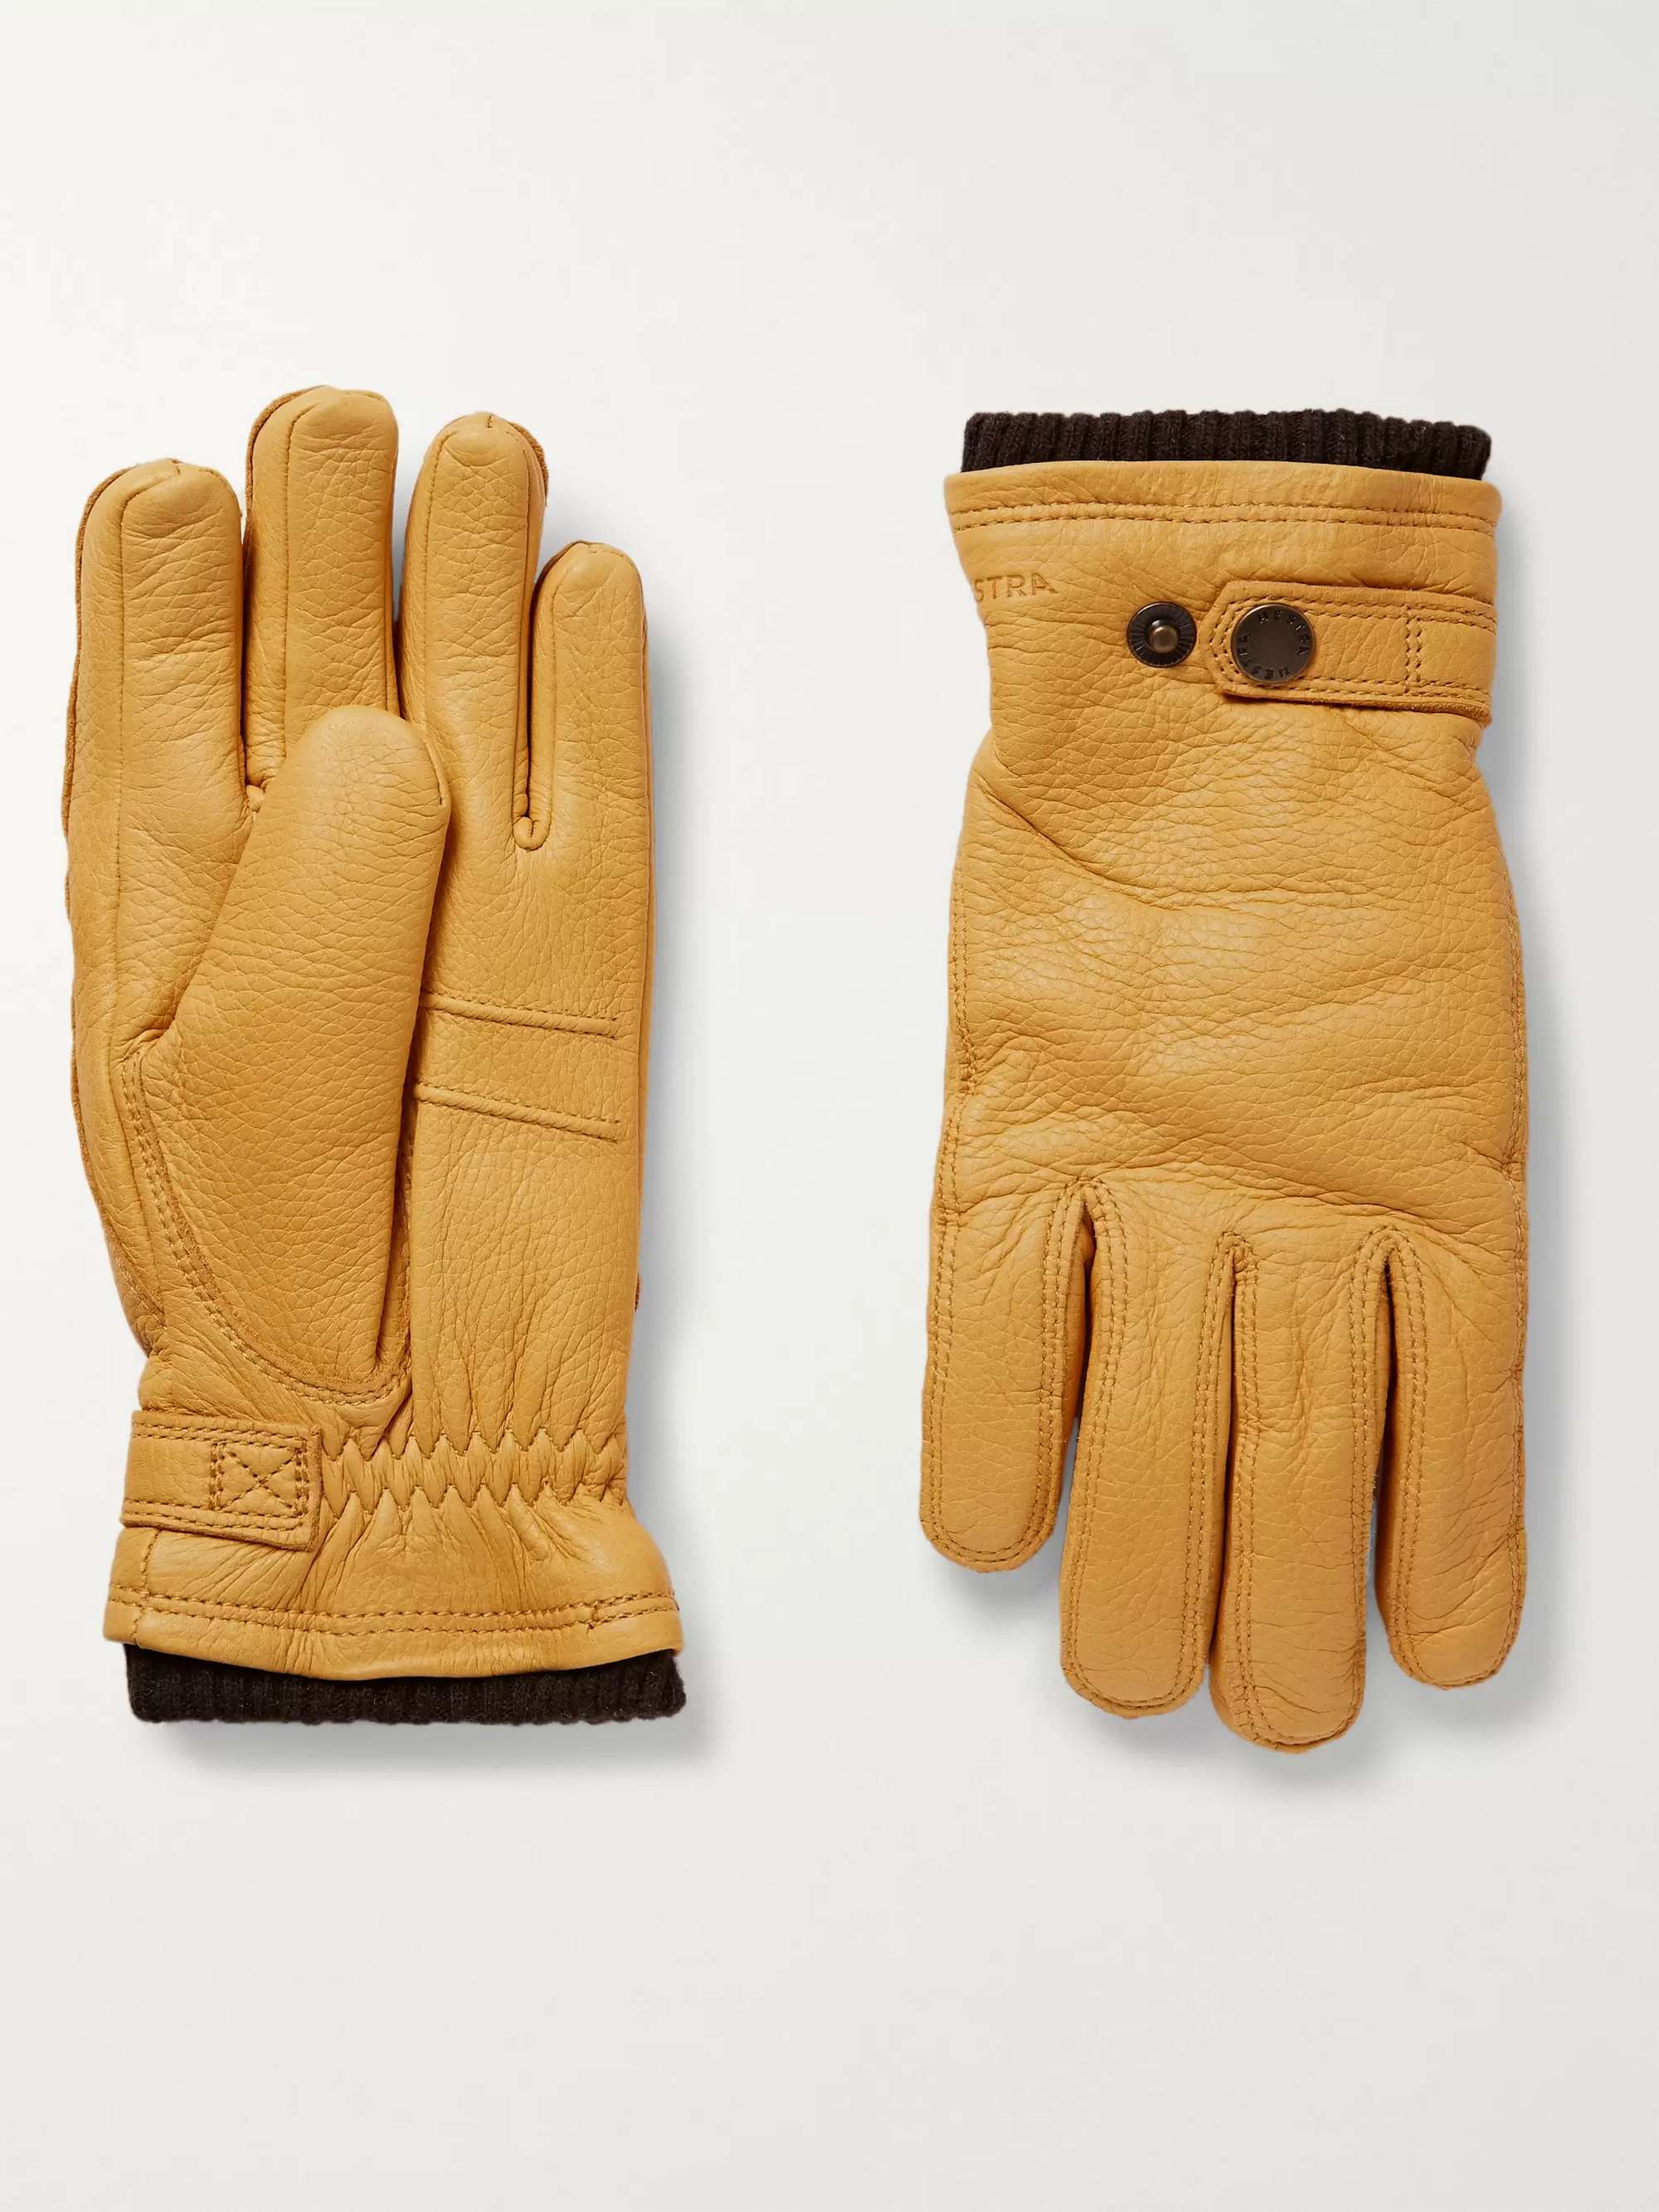 HESTRA Utsjö Fleece-Lined Full-Grain Leather Gloves